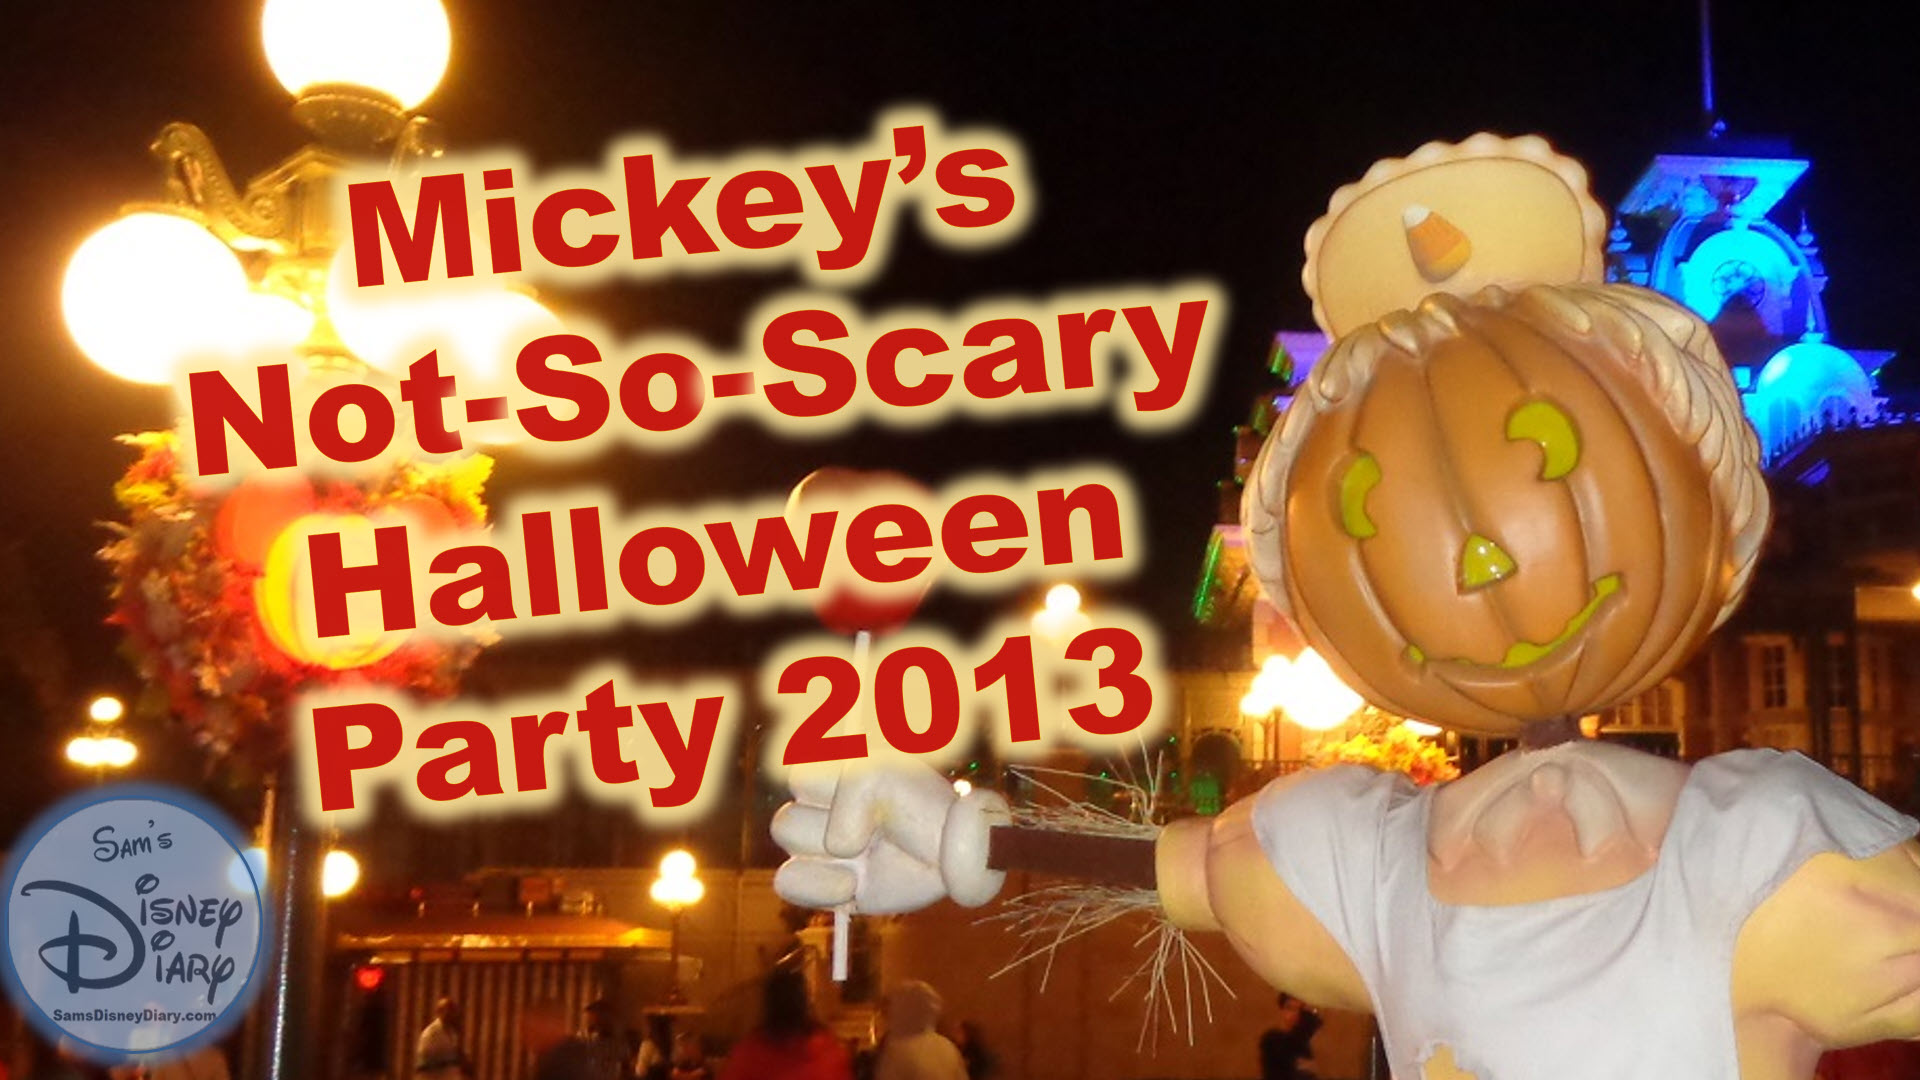 Mickey's Not so scary 2013